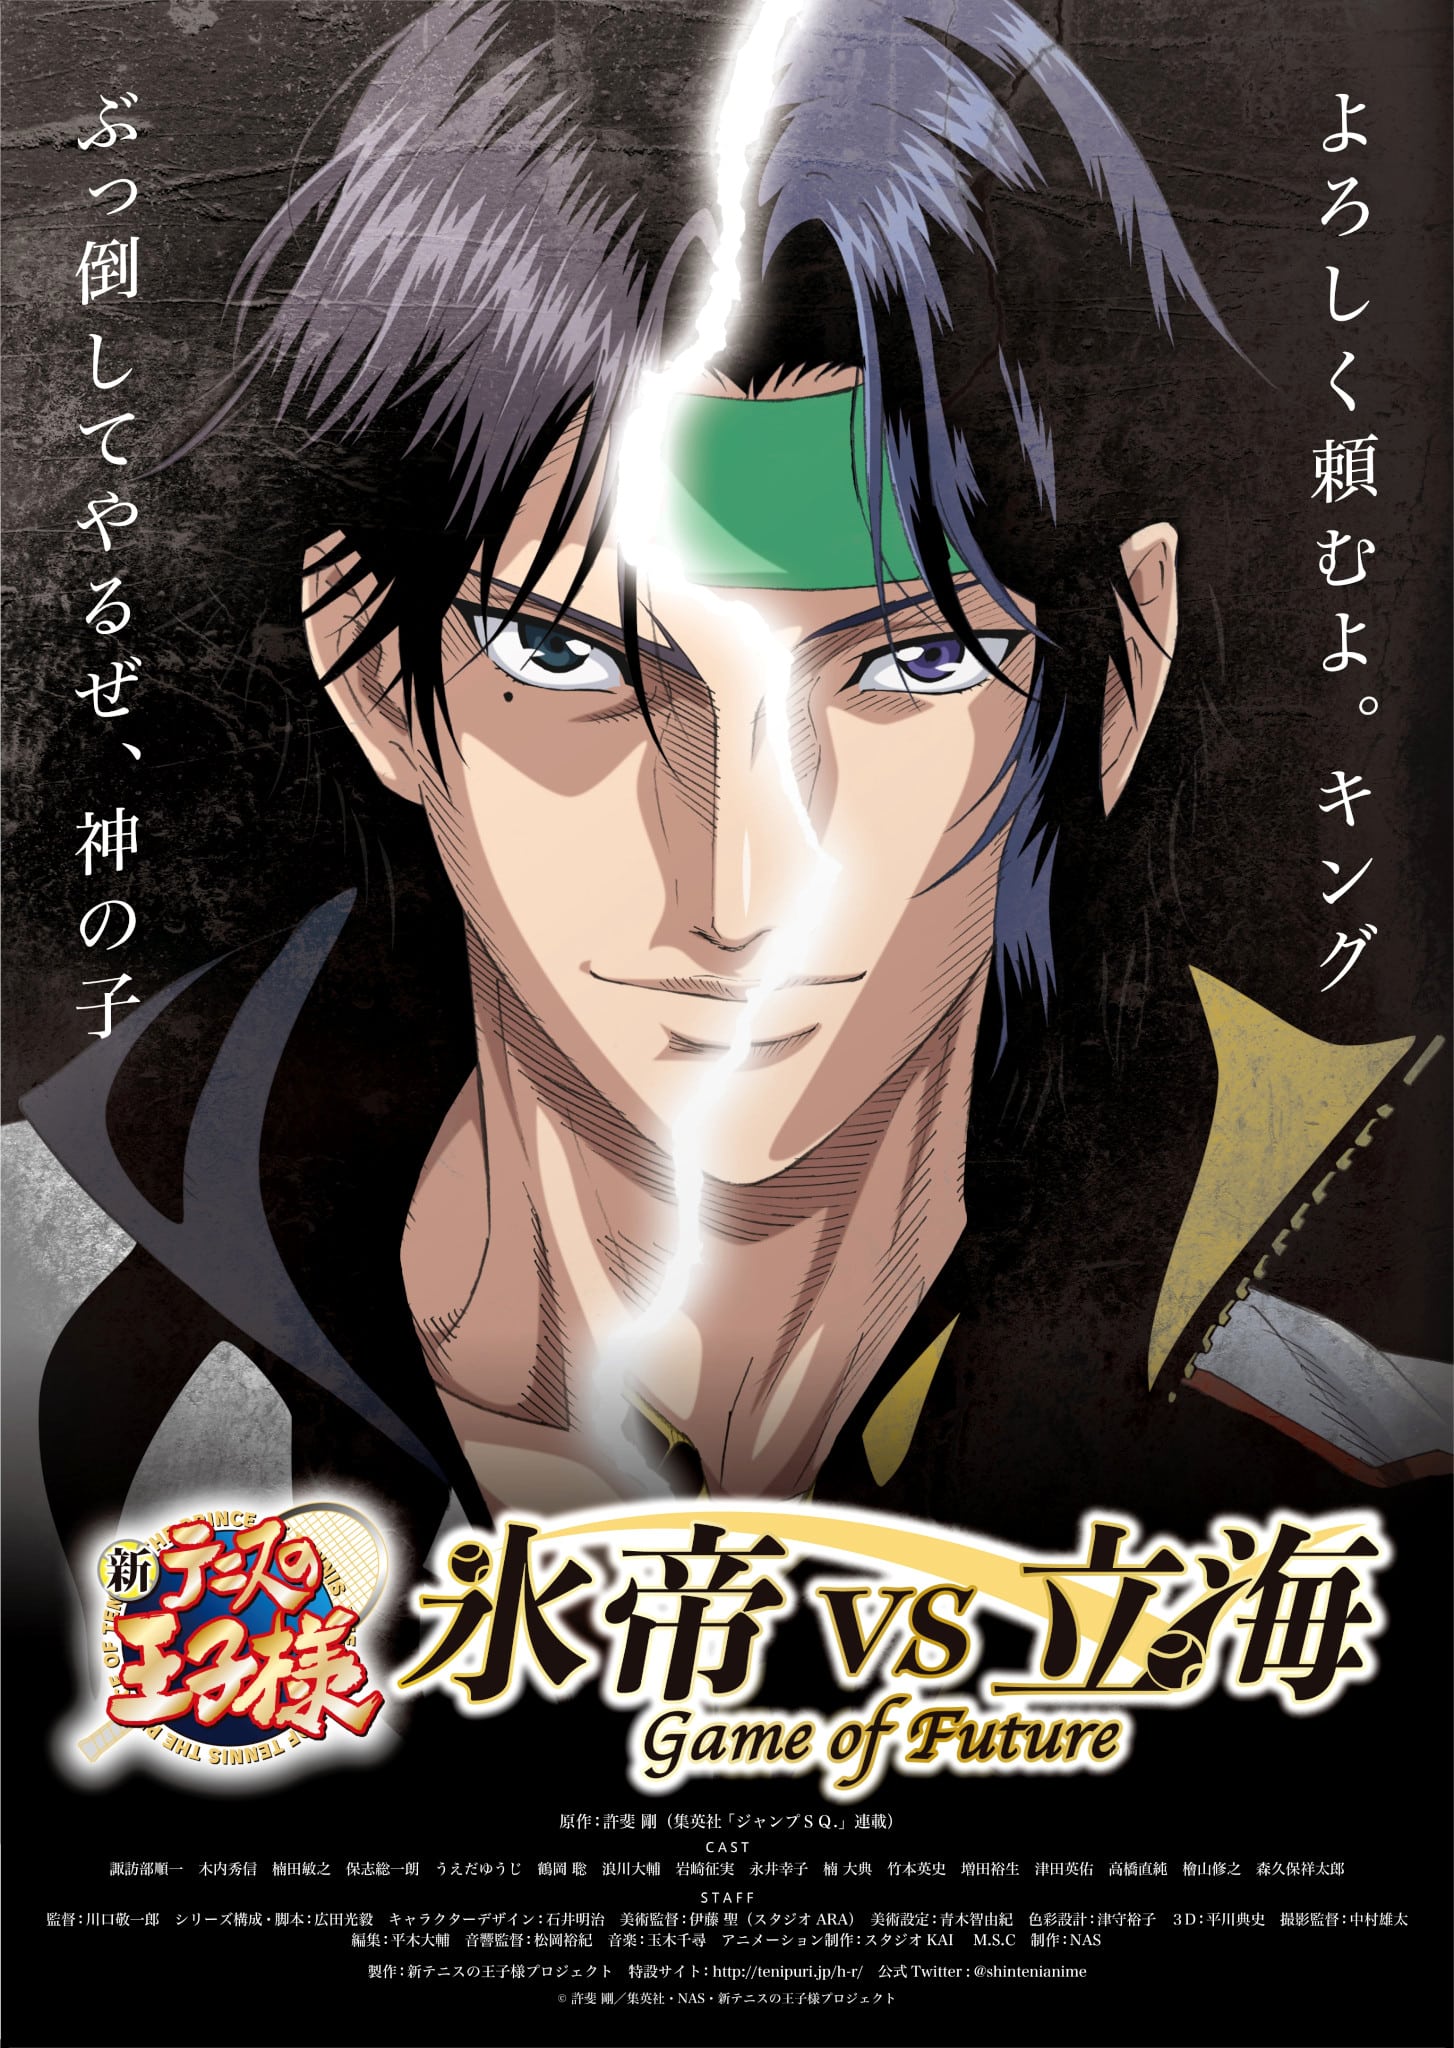 Annonce d'une date de sortie pour l'anime The Prince of Tennis : Hyotei vs Rikkai